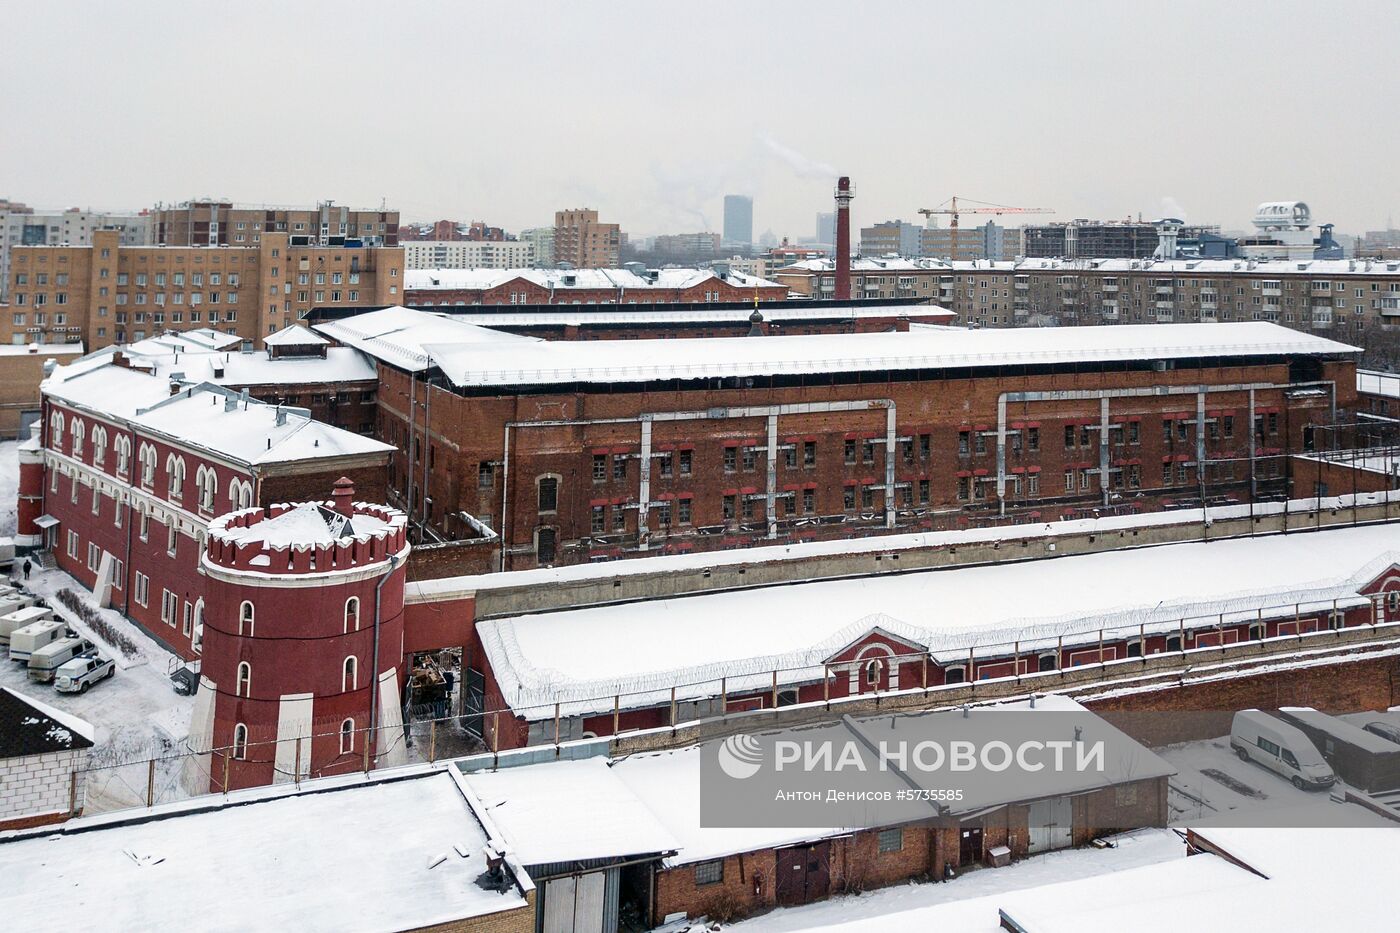 Бутырская тюрьма в Москве